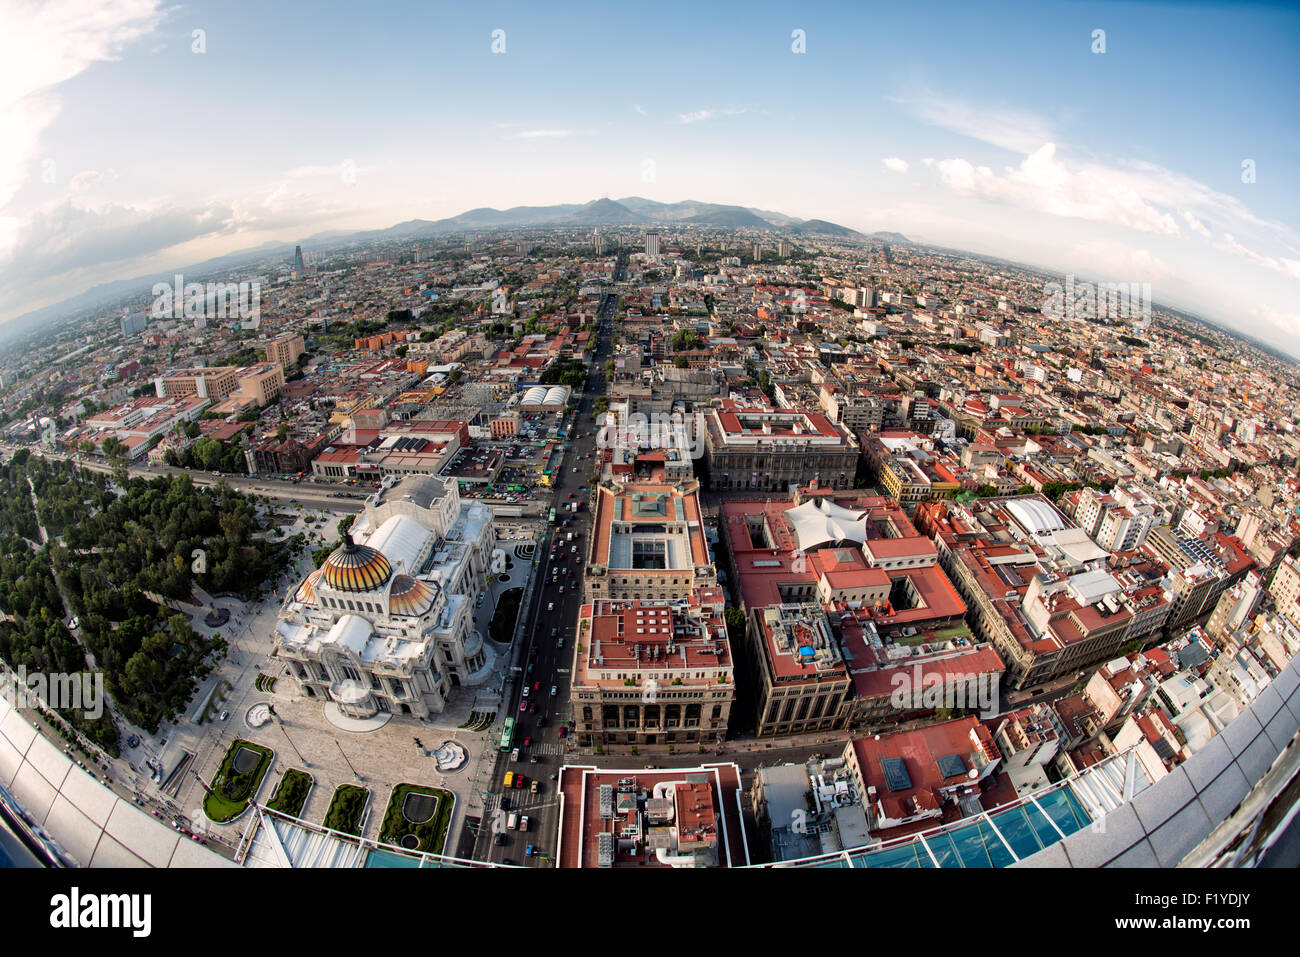 MEXIKO-STADT, Mexiko - ein Luftblick auf Mexiko-Stadt, der die weitläufige urbane Landschaft vom Gipfel des Torre Latinoamericana zeigt. Dieser legendäre Wolkenkratzer, einst der höchste in Lateinamerika, bietet unvergleichliche Perspektiven auf die weitläufige und komplizierte Stadt. Stockfoto